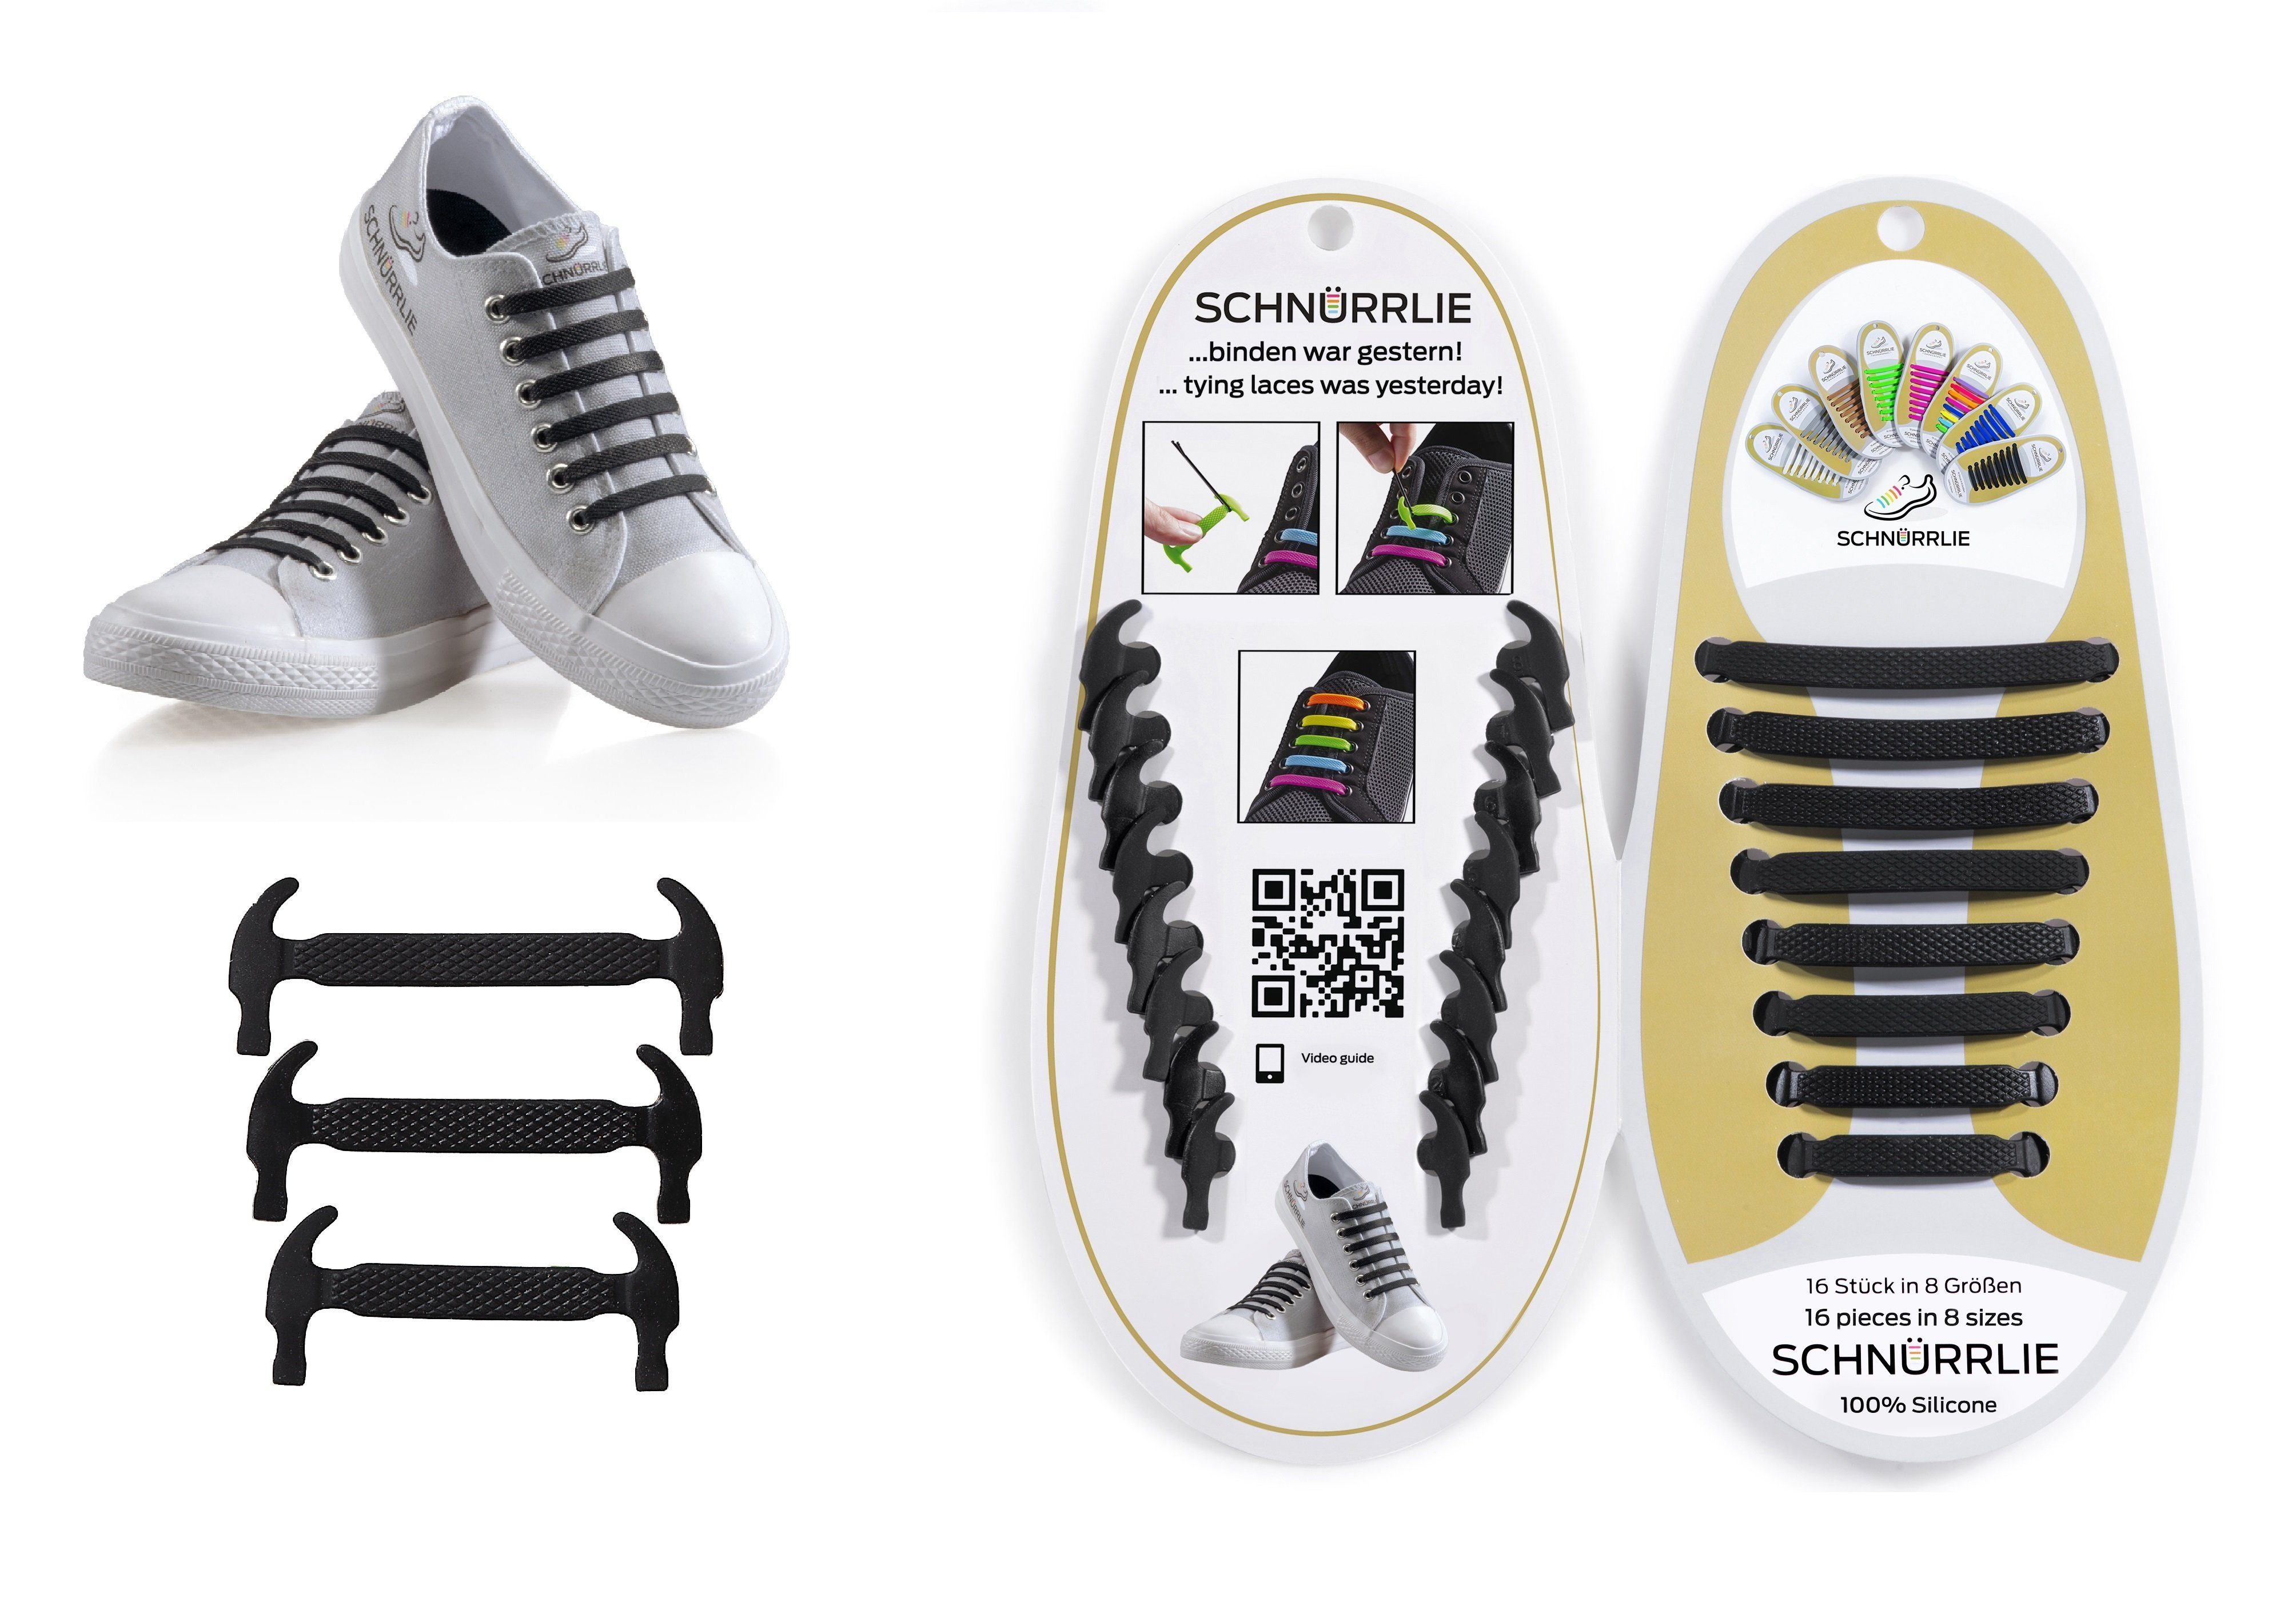 SCHNÜRRLIE Schnürsenkel Silikon Schnürbänder flache - Turnschuhe, Schwarz Laces, für uvm Sportschuhe Sneaker, elastische